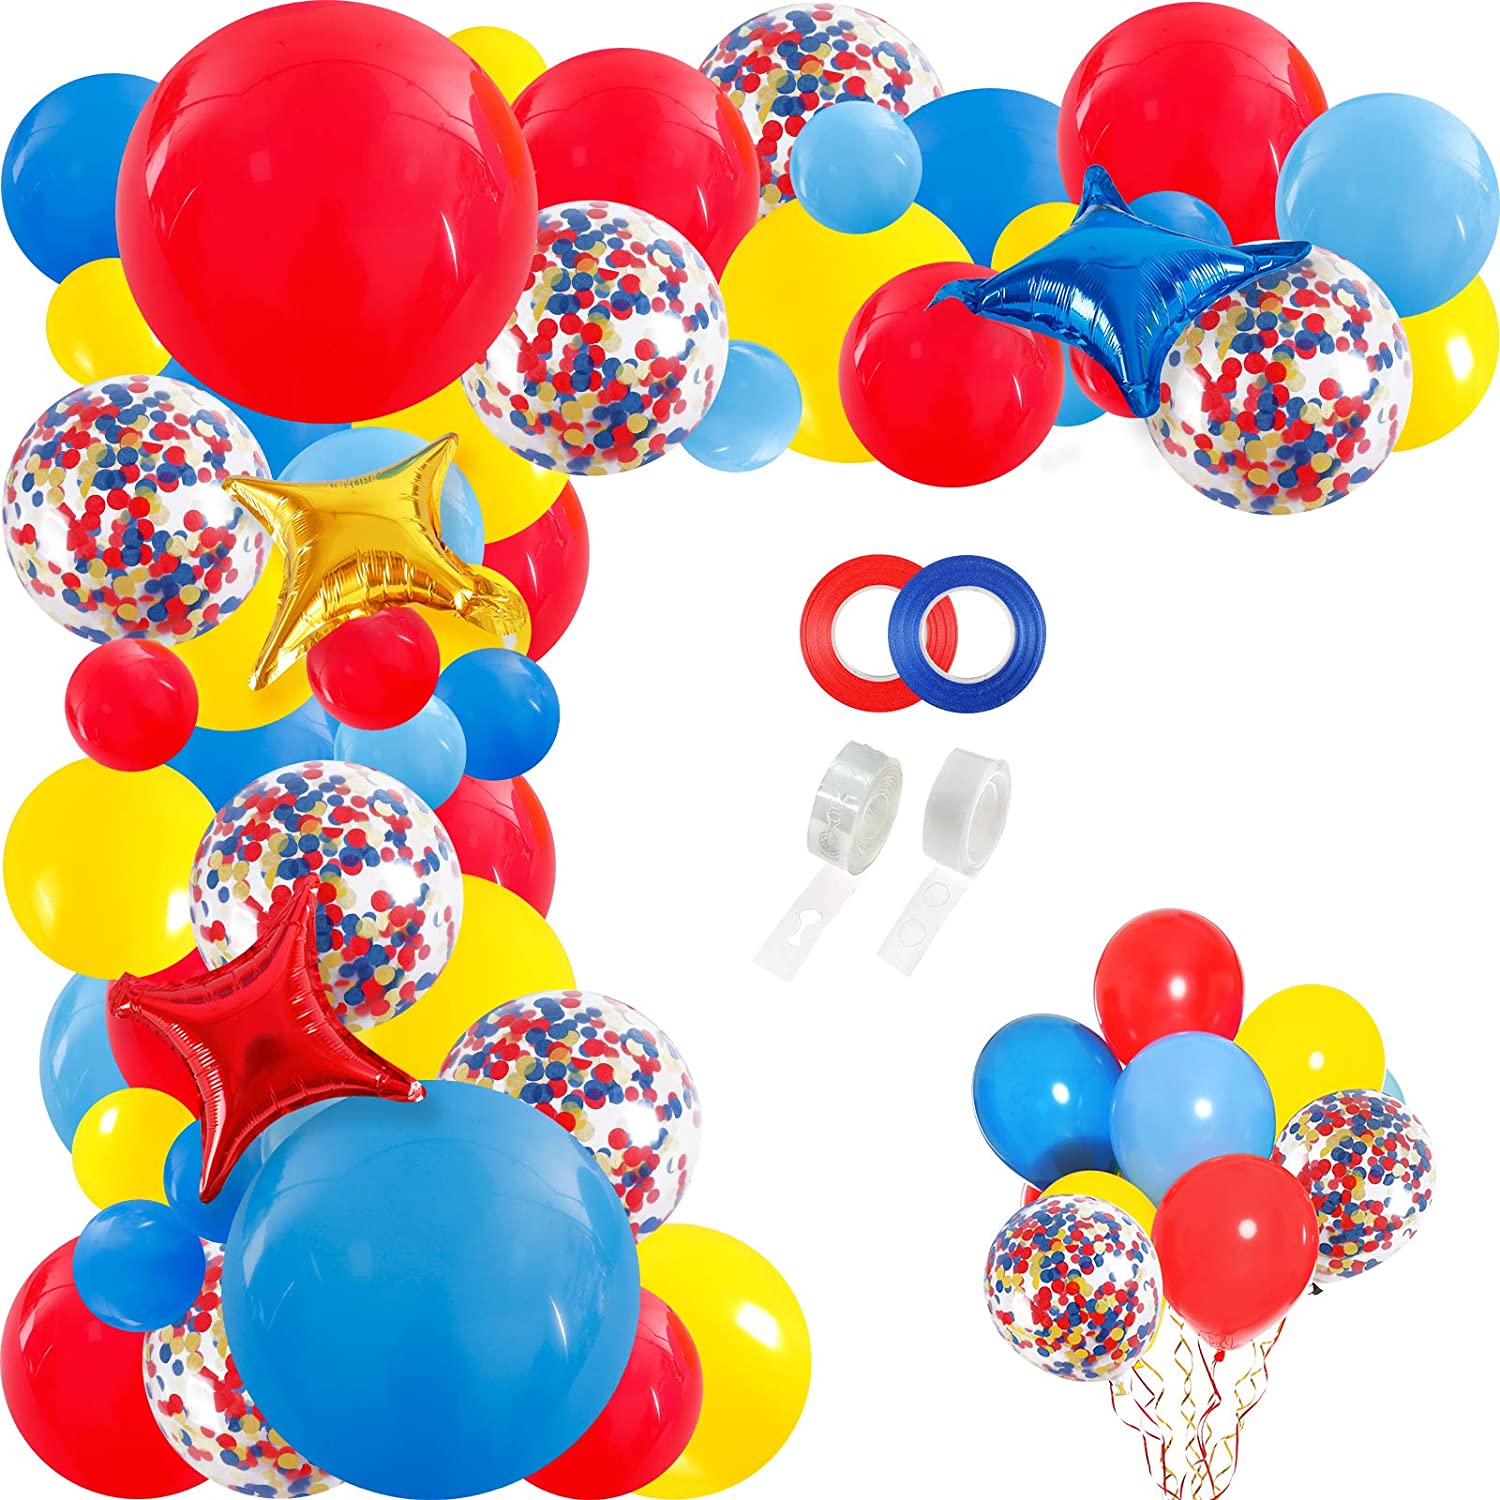 life's-a-circus-enjoy-the-party-balloon-arch